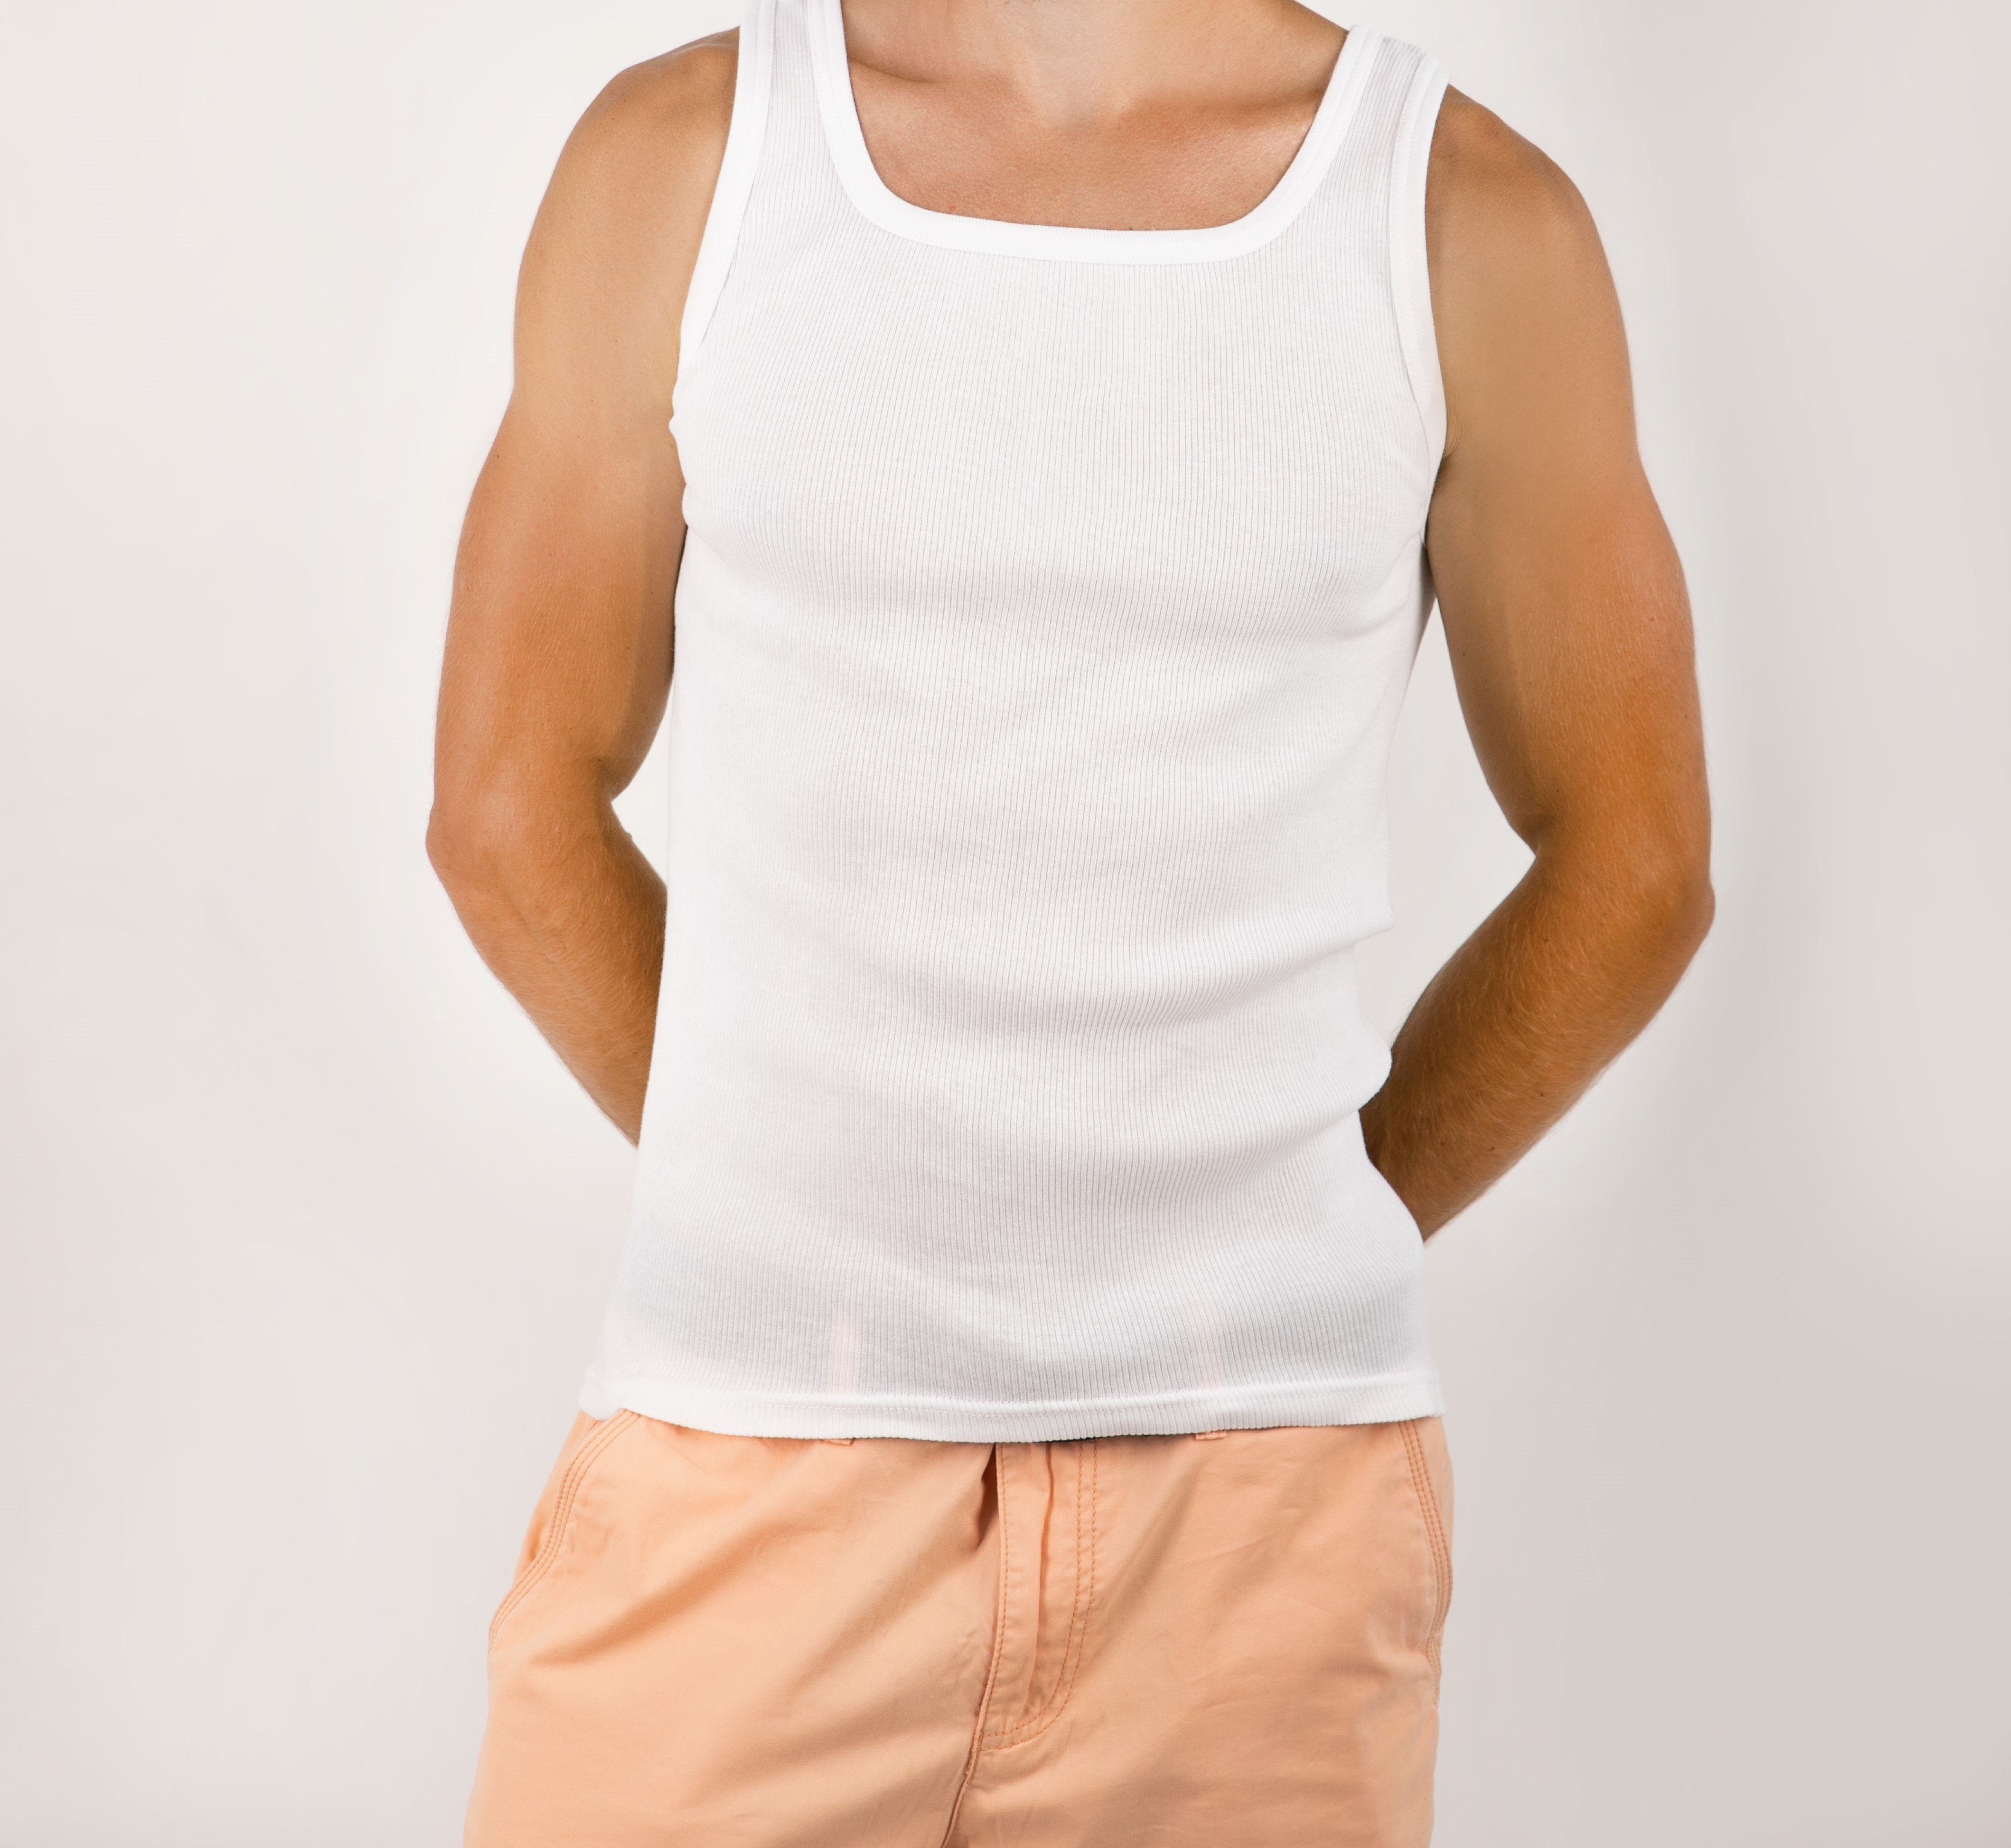 Baumwolle Unterhemd Herrenunterhemden STTS 3-er Weiß Pack 100% Top-Qualität Feinripp